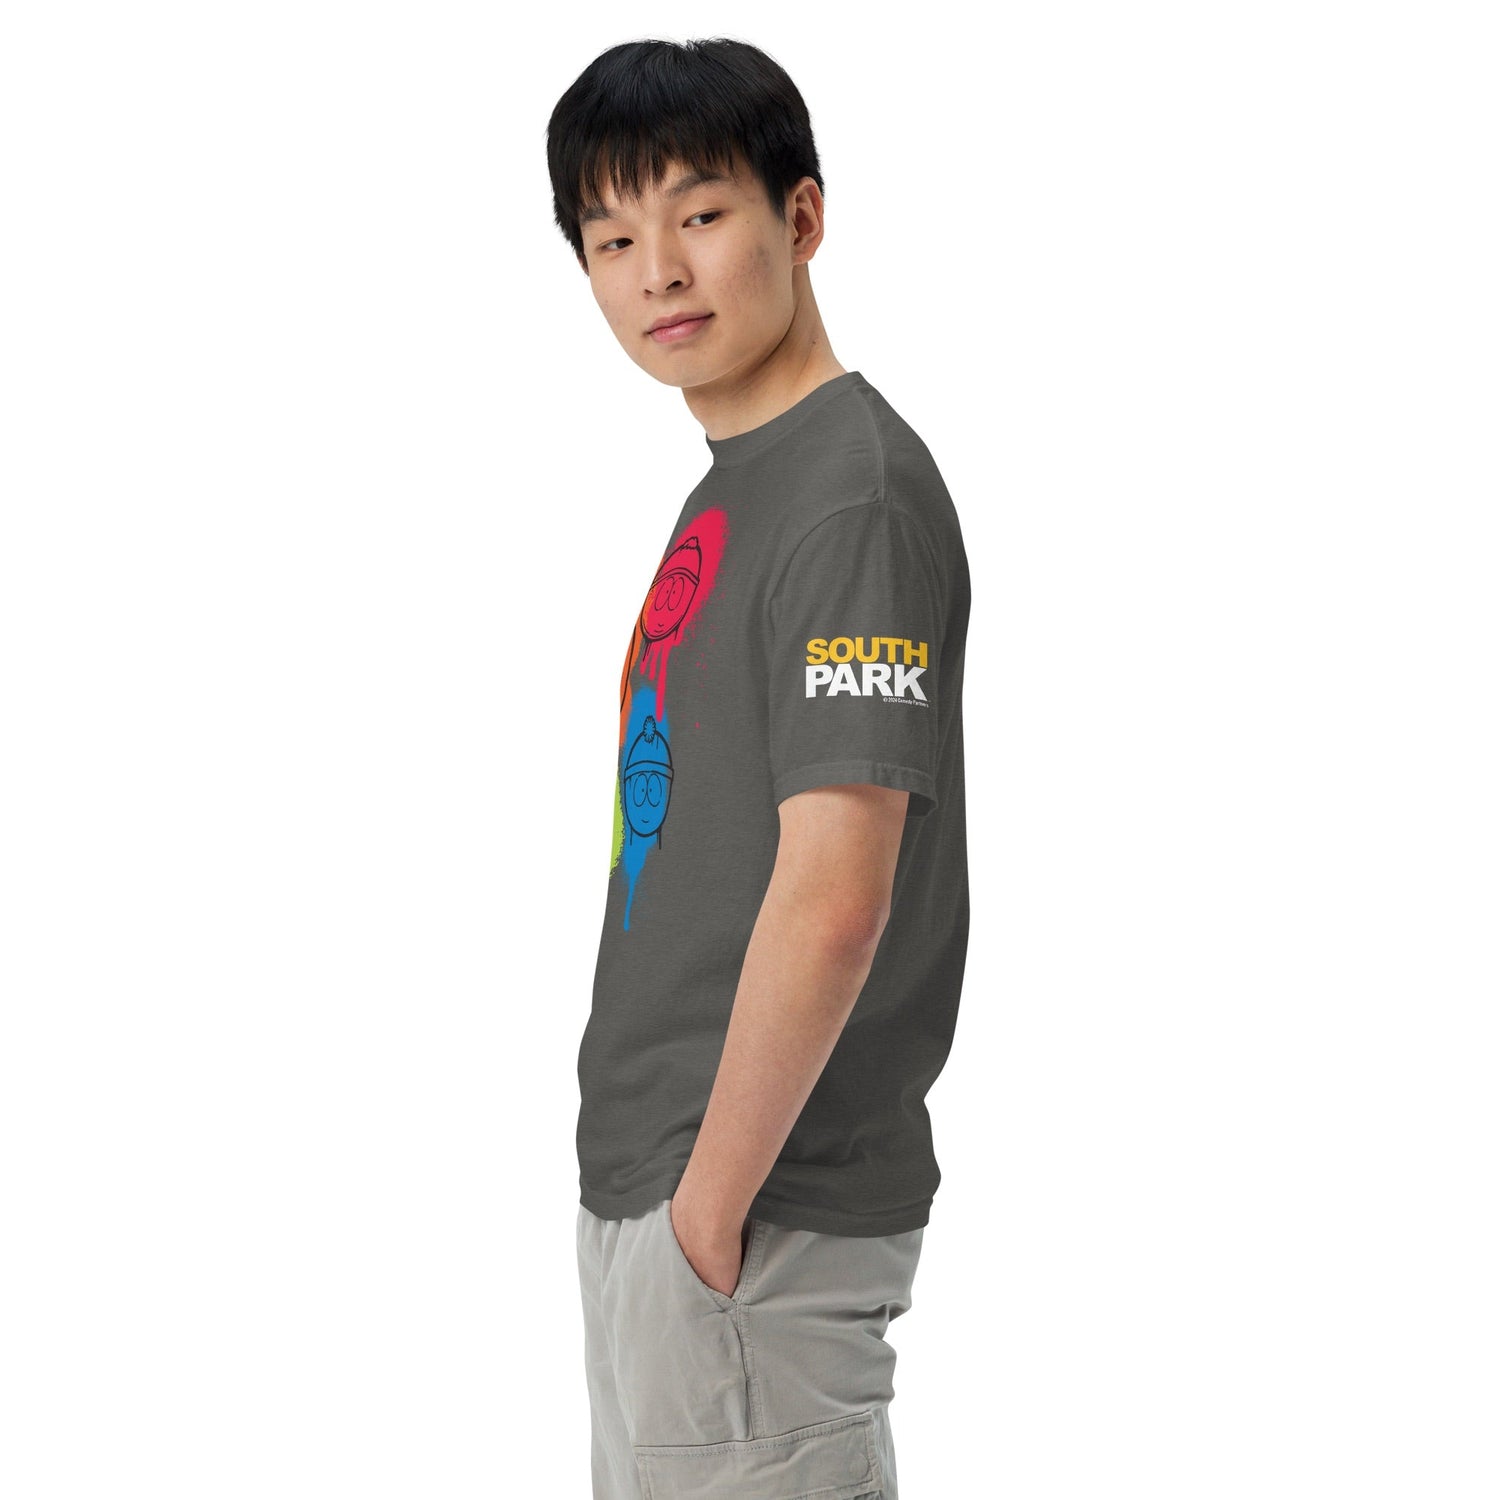 South Park Spray Paint Comfort Colors T - Shirt - Paramount Shop